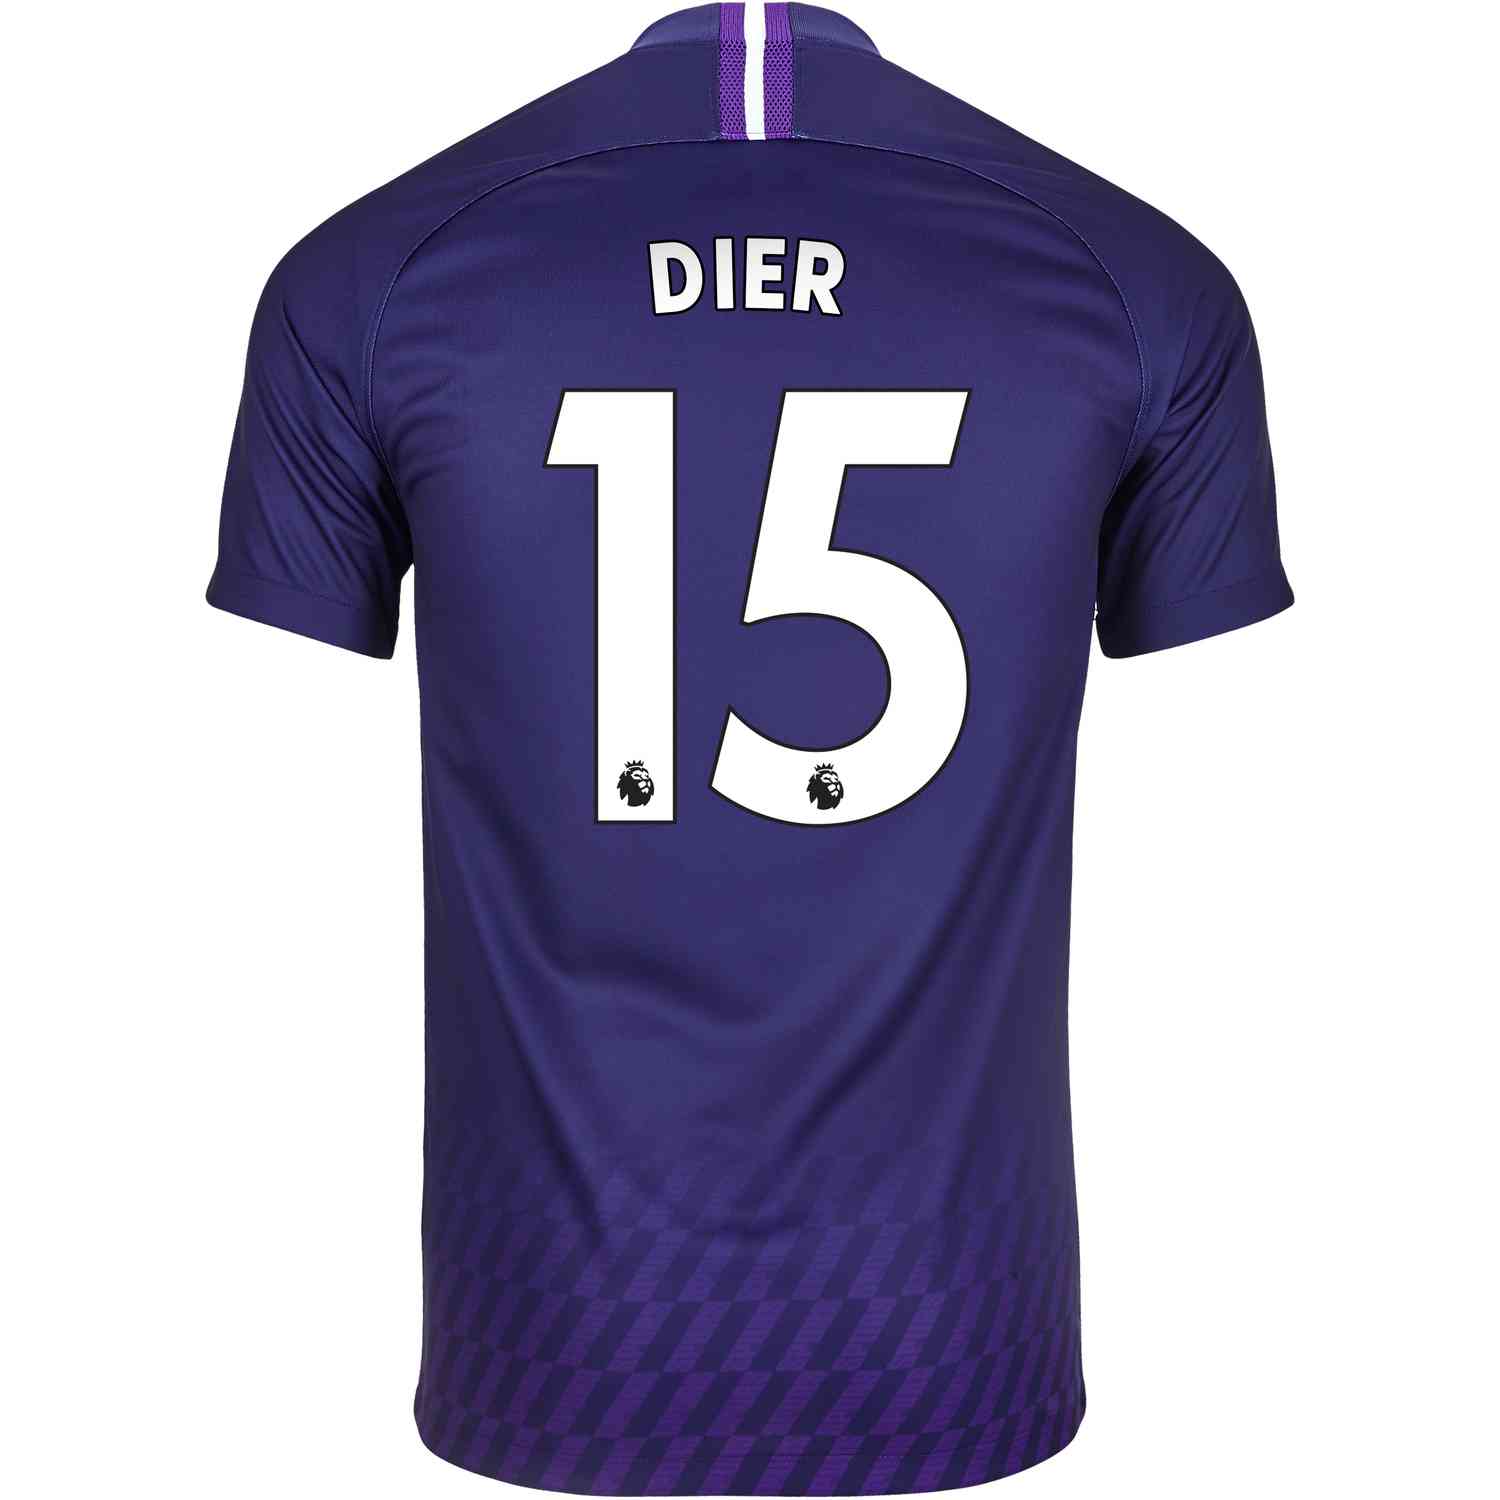 2019/20 Nike Eric Dier Tottenham Away Jersey - SoccerPro